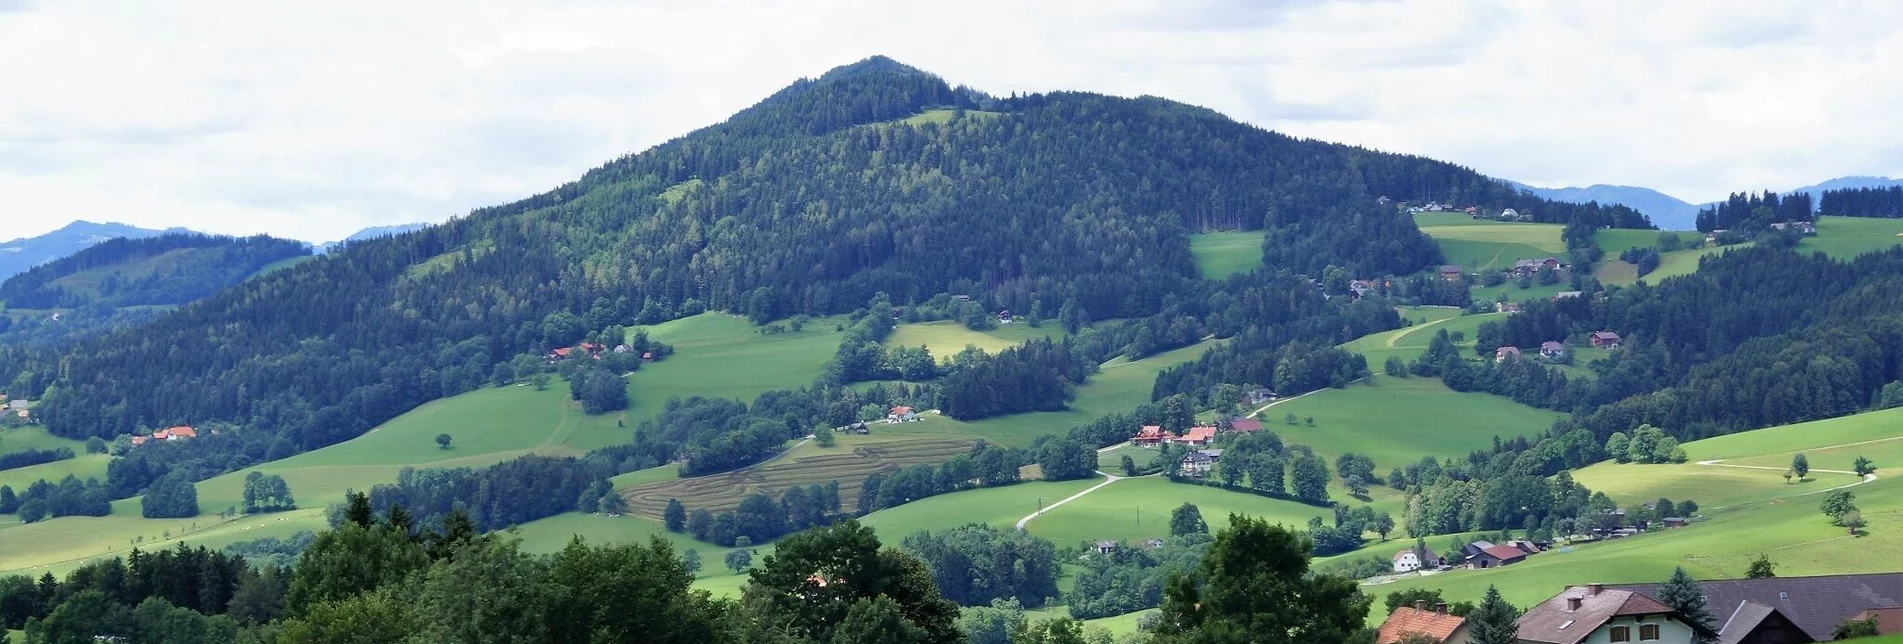 Wanderung R4 Kl. Panoramarundweg - Touren-Impression #1 | © Region Graz